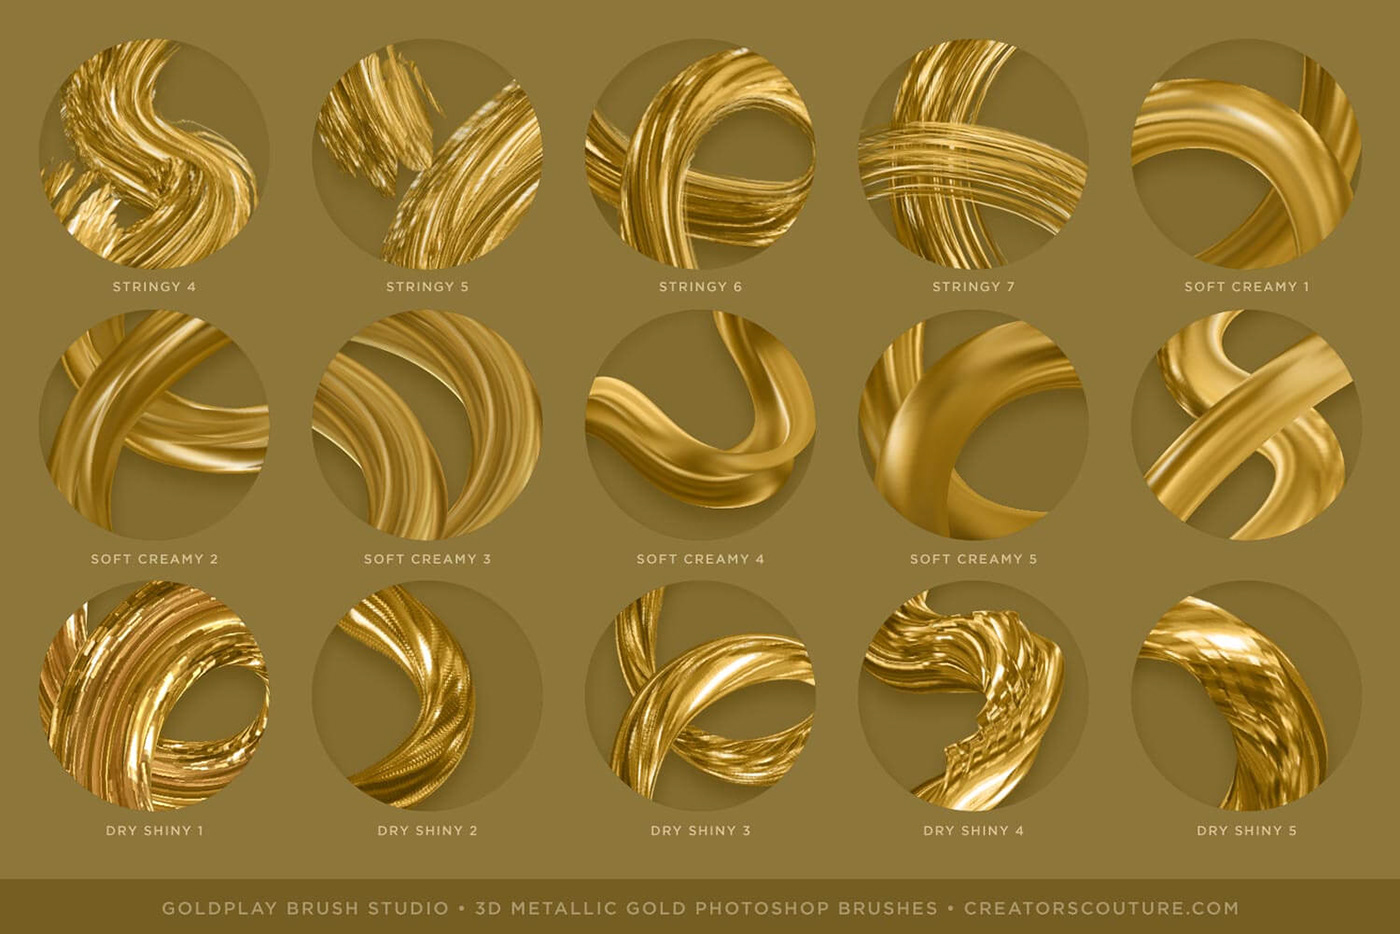 3D brush brushes gold lettering metallic Photoshop brush Free photoshop brush Photoshop brushes metallic gold